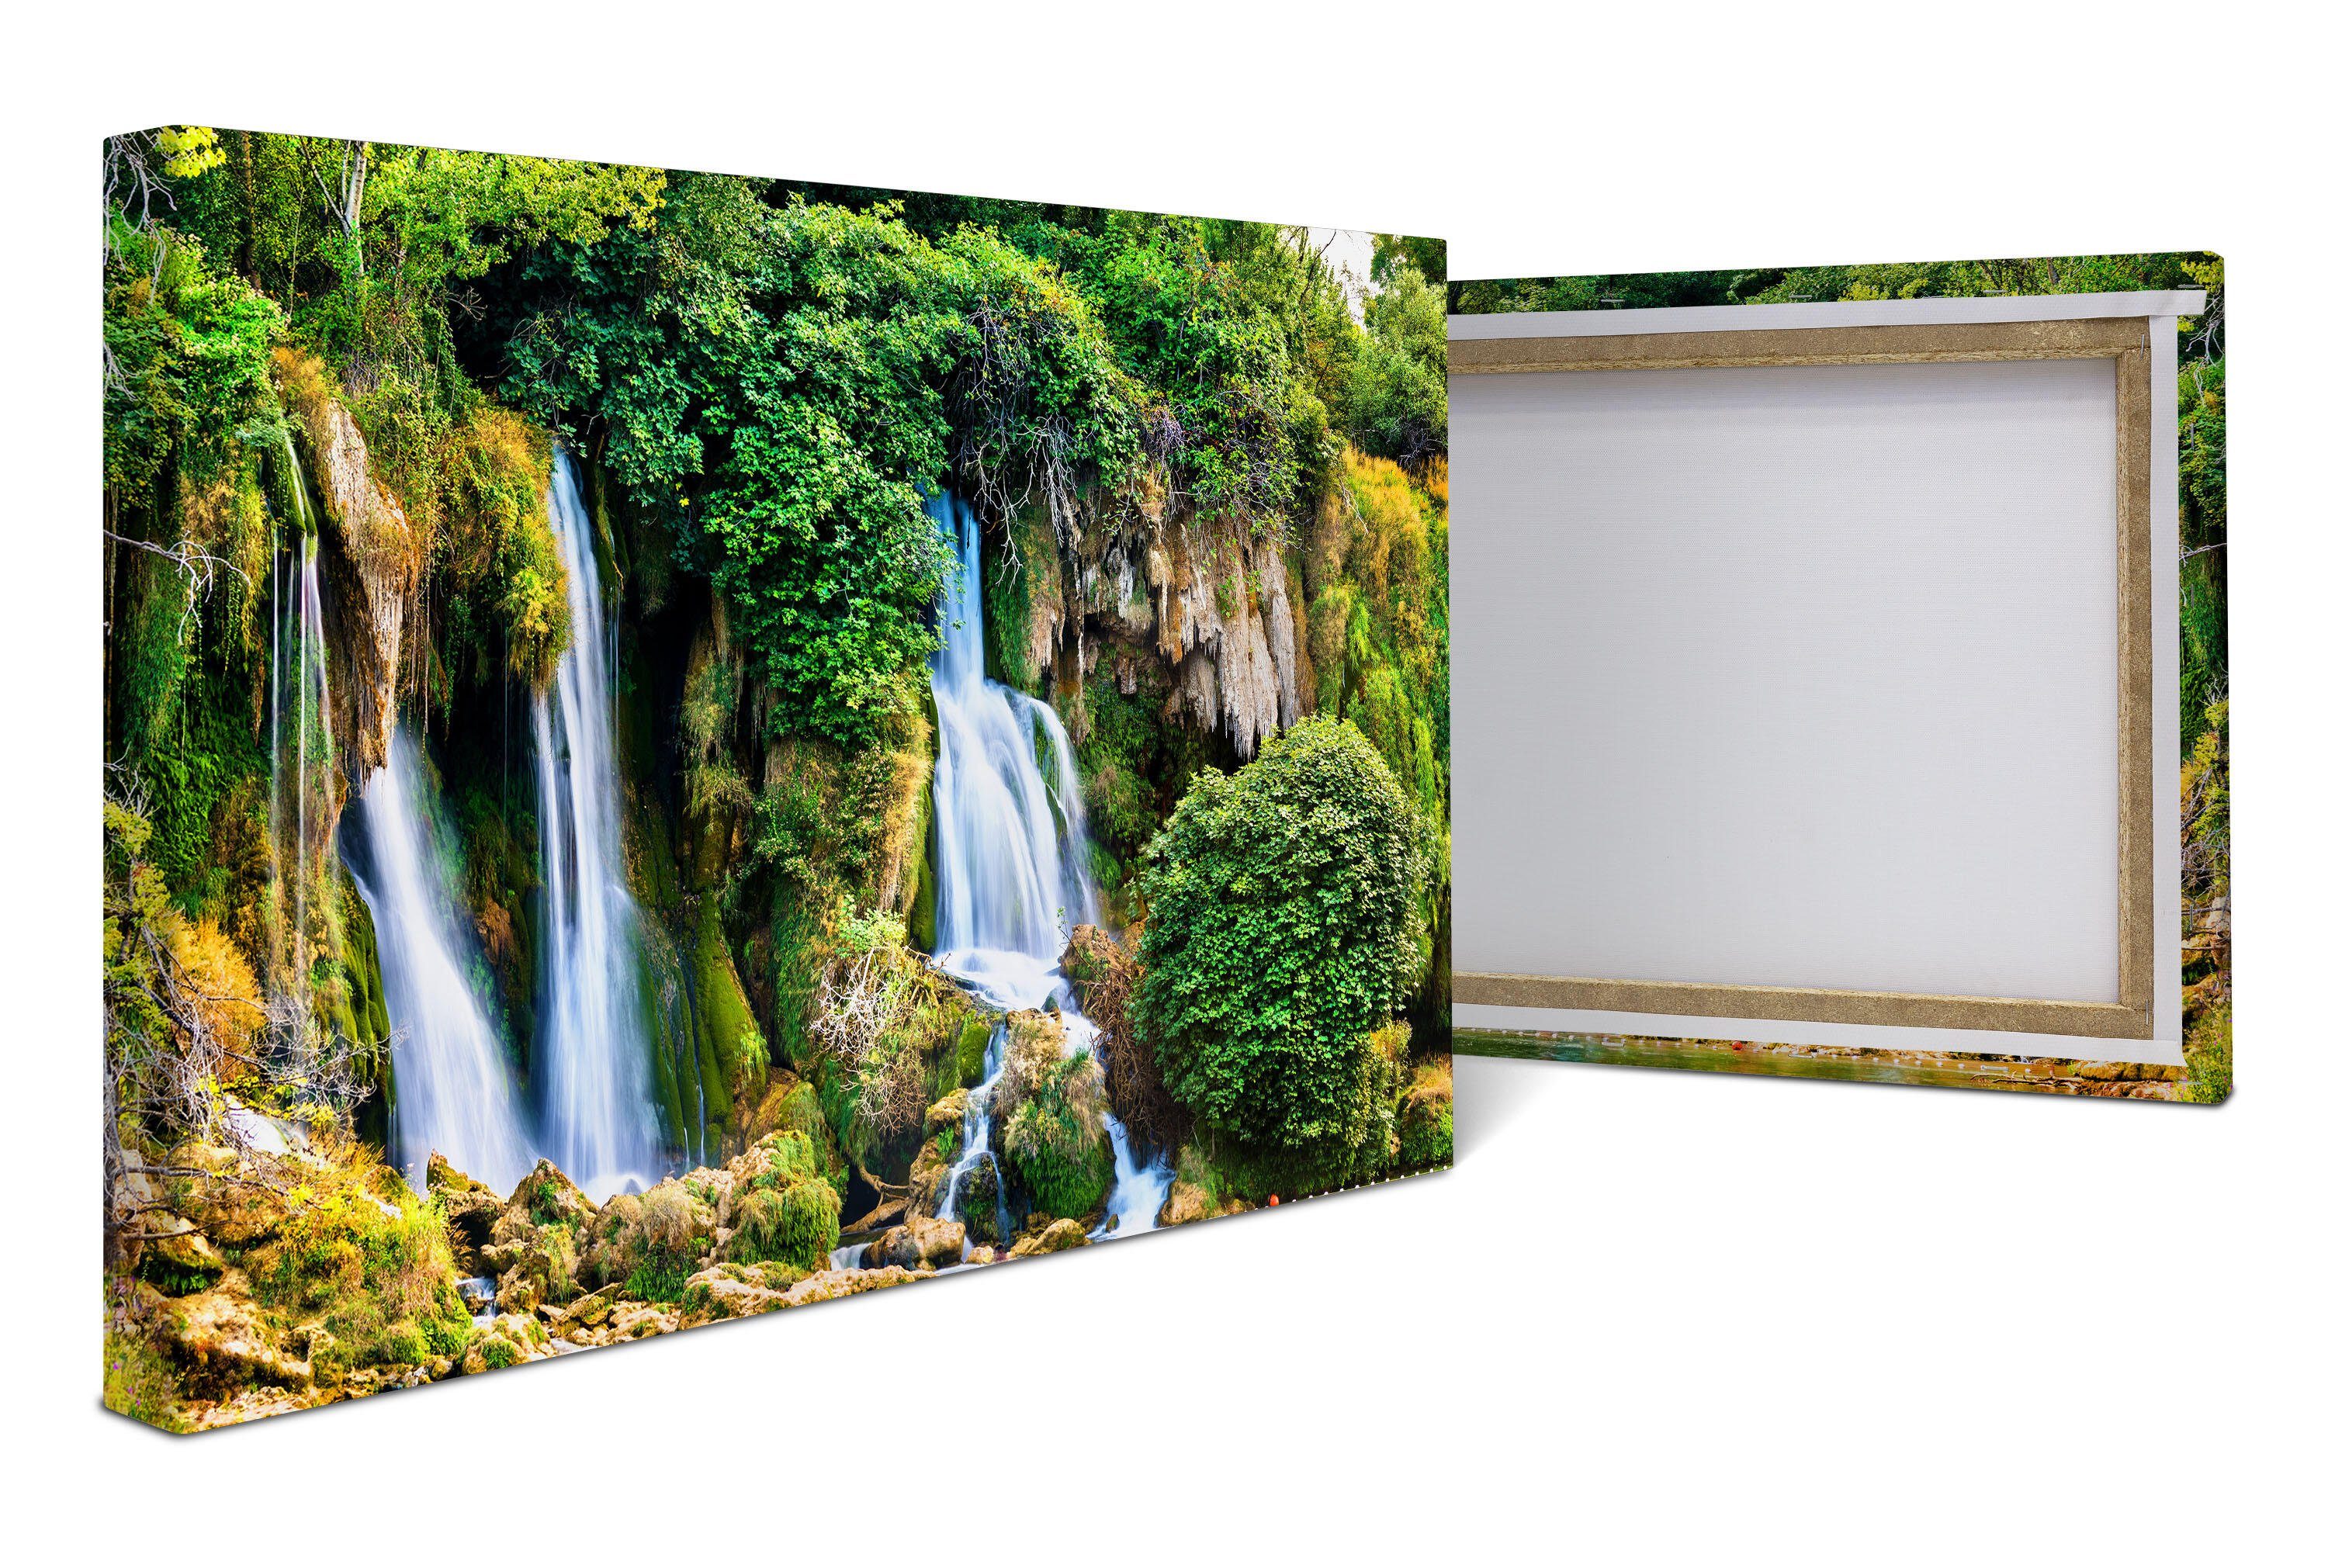 wandmotiv24 Leinwandbild Wasserfall im Urwald, Klippe, Dschungel, Landschaft (1 St), Wandbild, Wanddeko, Leinwandbilder in versch. Größen